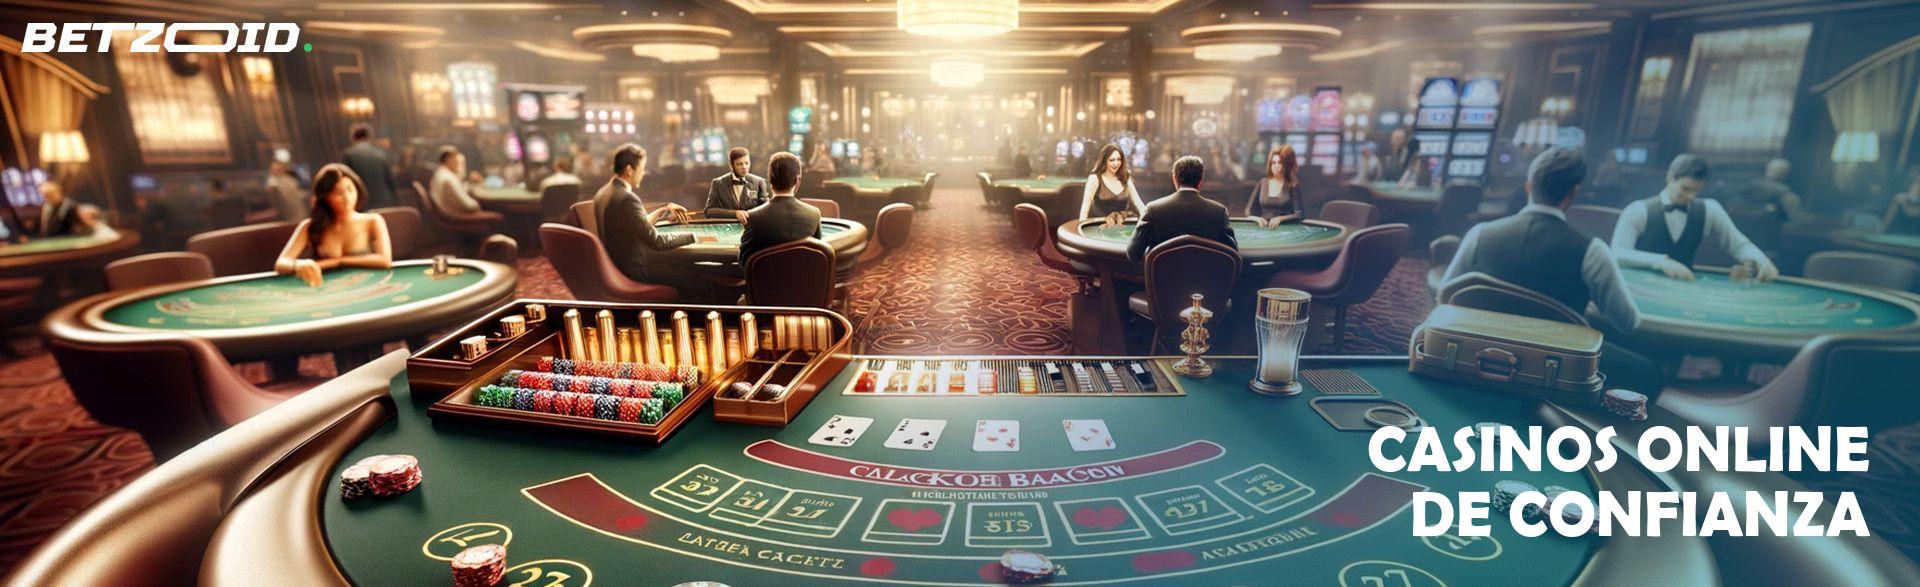 Casinos Online de Confianza.